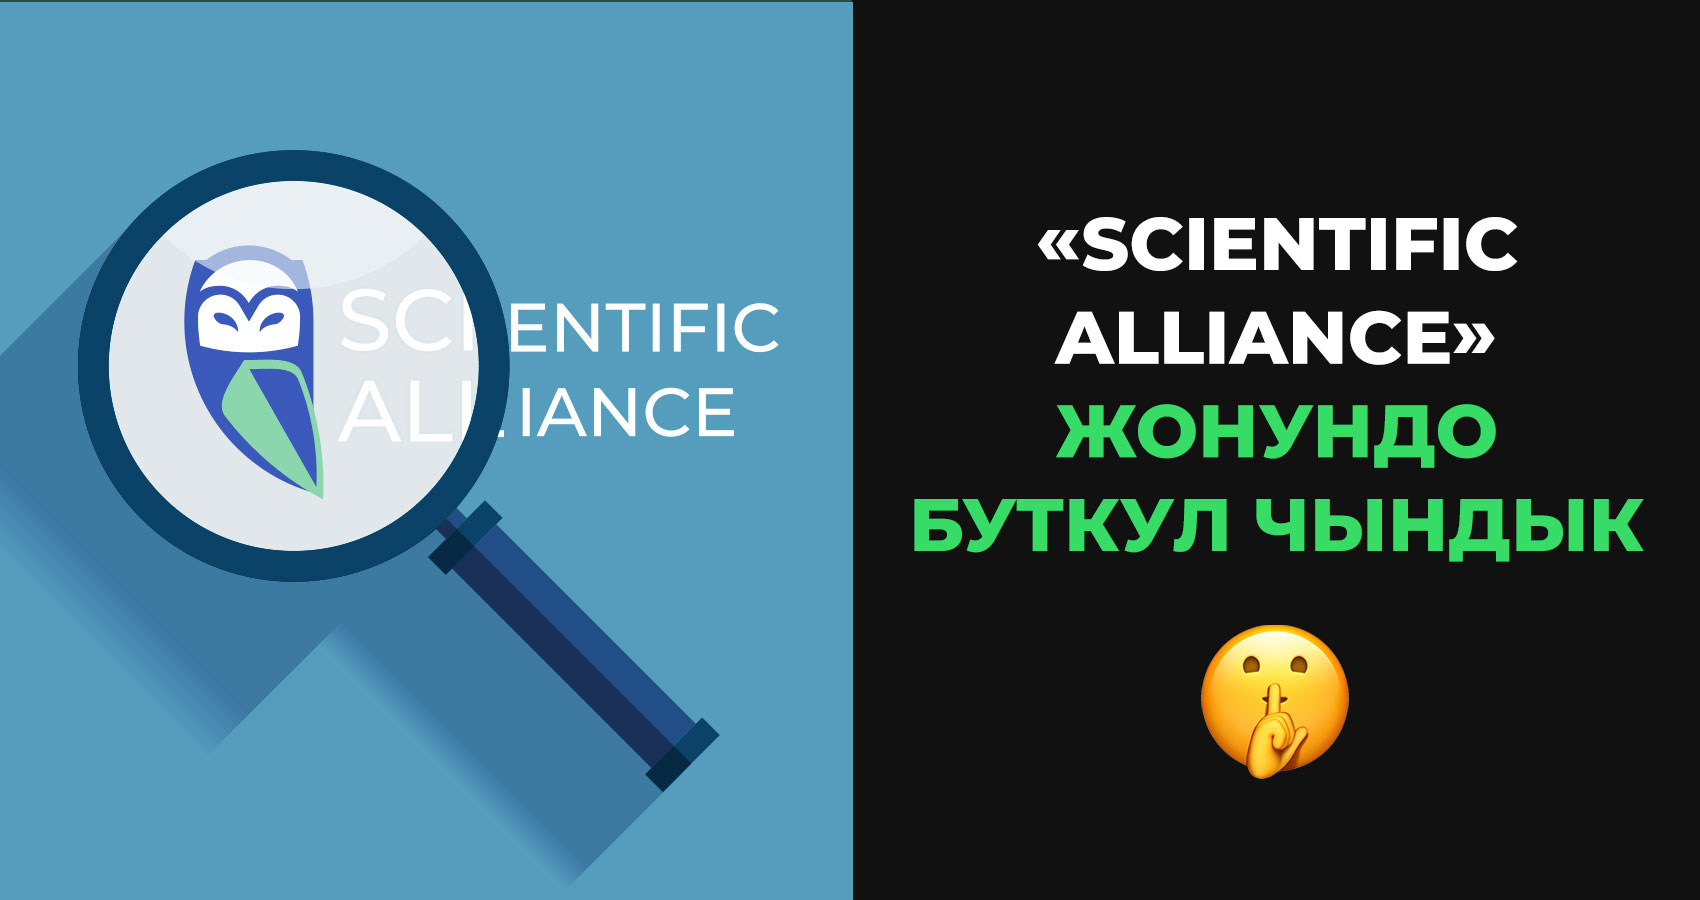 Scientific Alliance жөнүндө чындык. Даярламалар, санжылар жана андан башка маалыматтар.